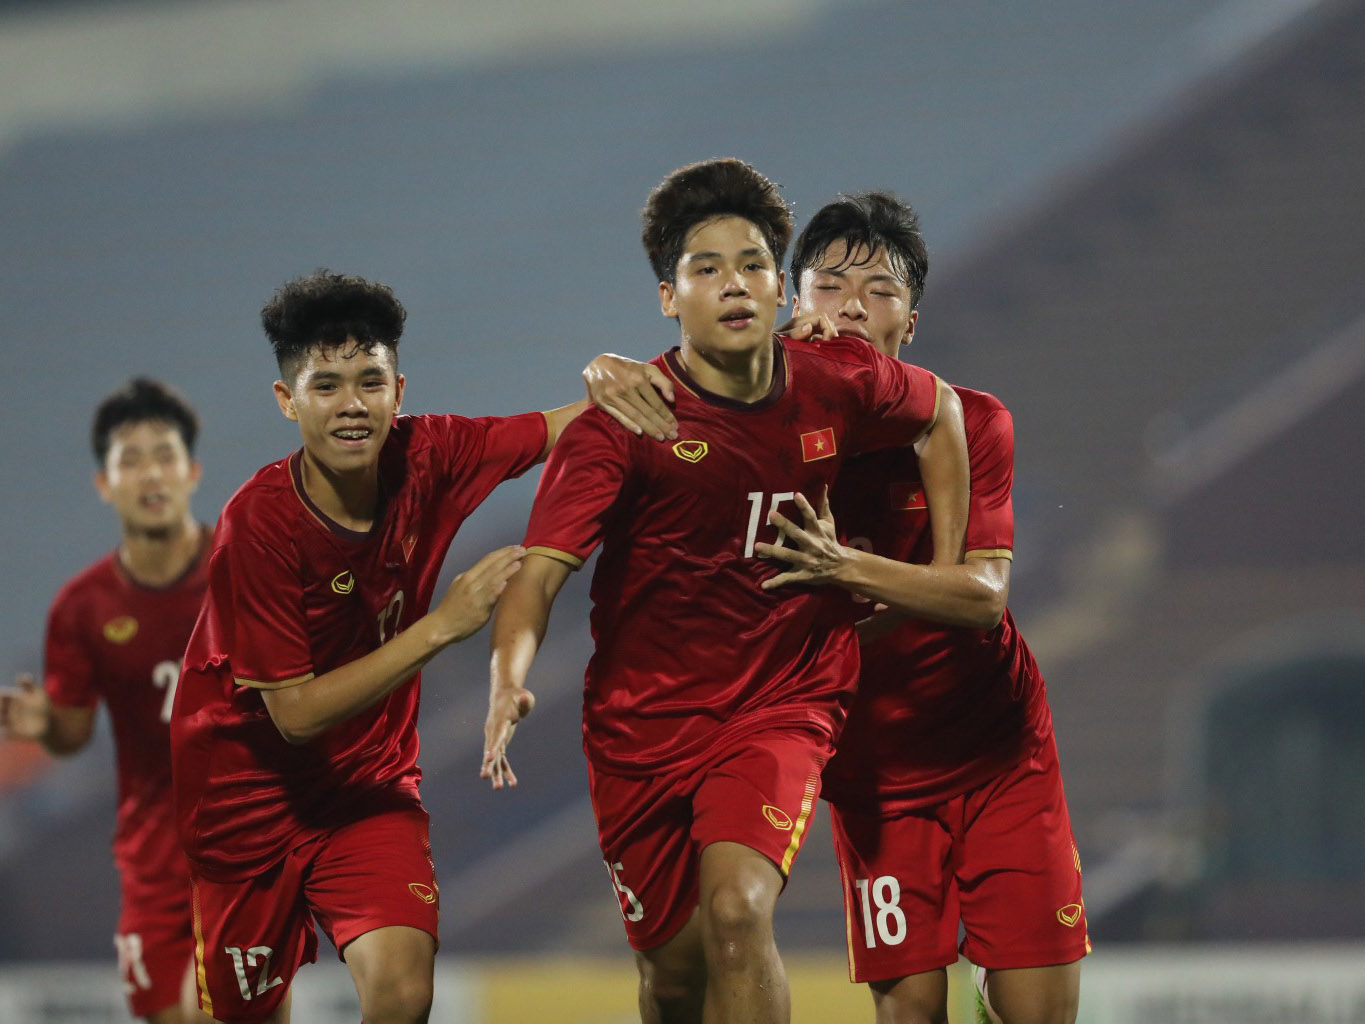 Kết quả bóng đá U17 Việt Nam 4-0 U17 Đài Loan: Lê Phát lập cú đúp, U17 Việt Nam khởi đầu ấn tượng